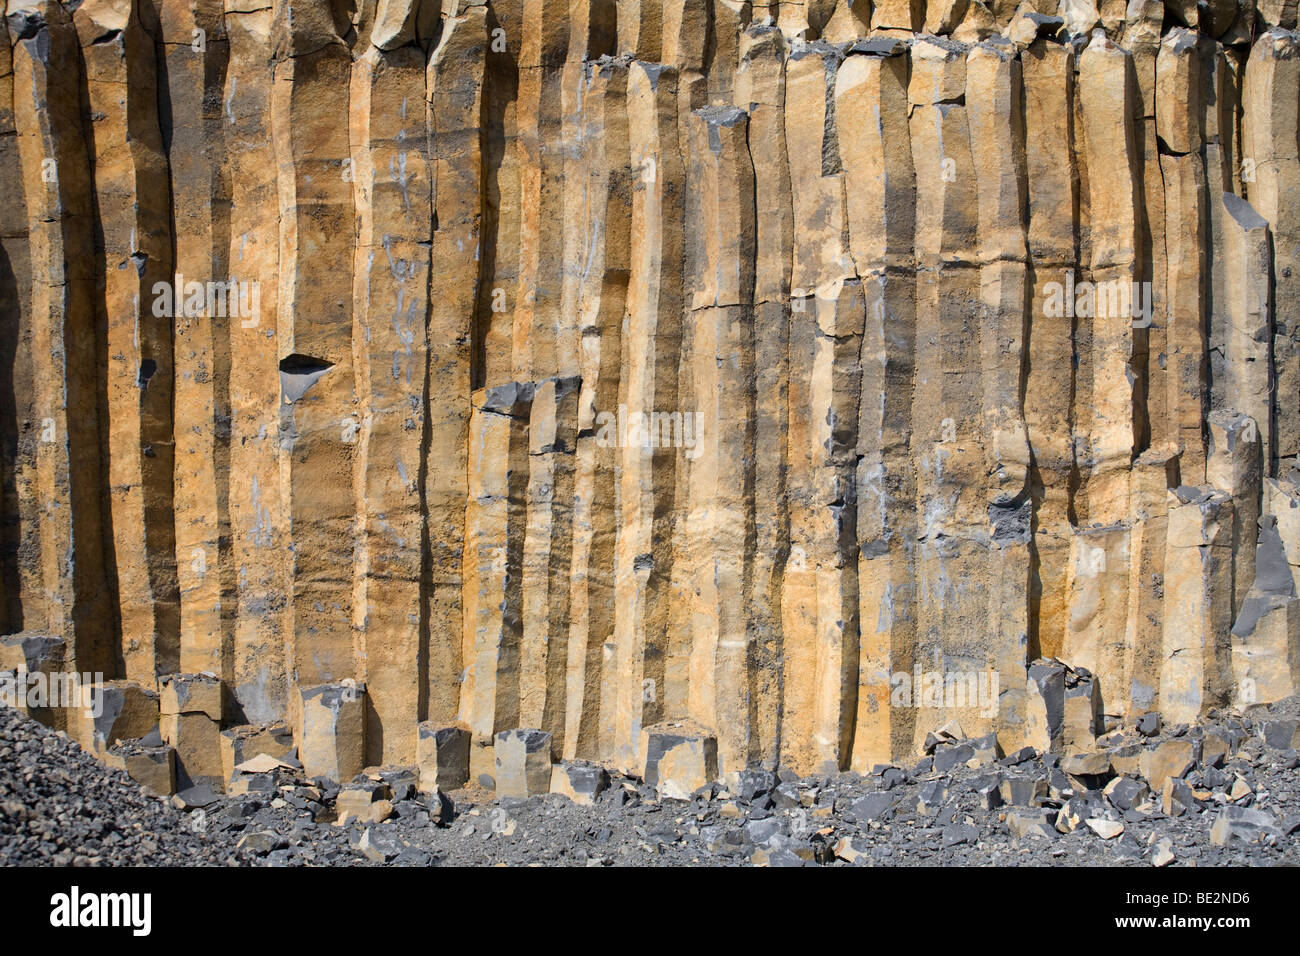 Les colonnes de basalte dans la région de la réserve naturelle des volcans d'Auvergne. Orgues basaltiques dans le Parc Naturel d'Auvergne. Banque D'Images